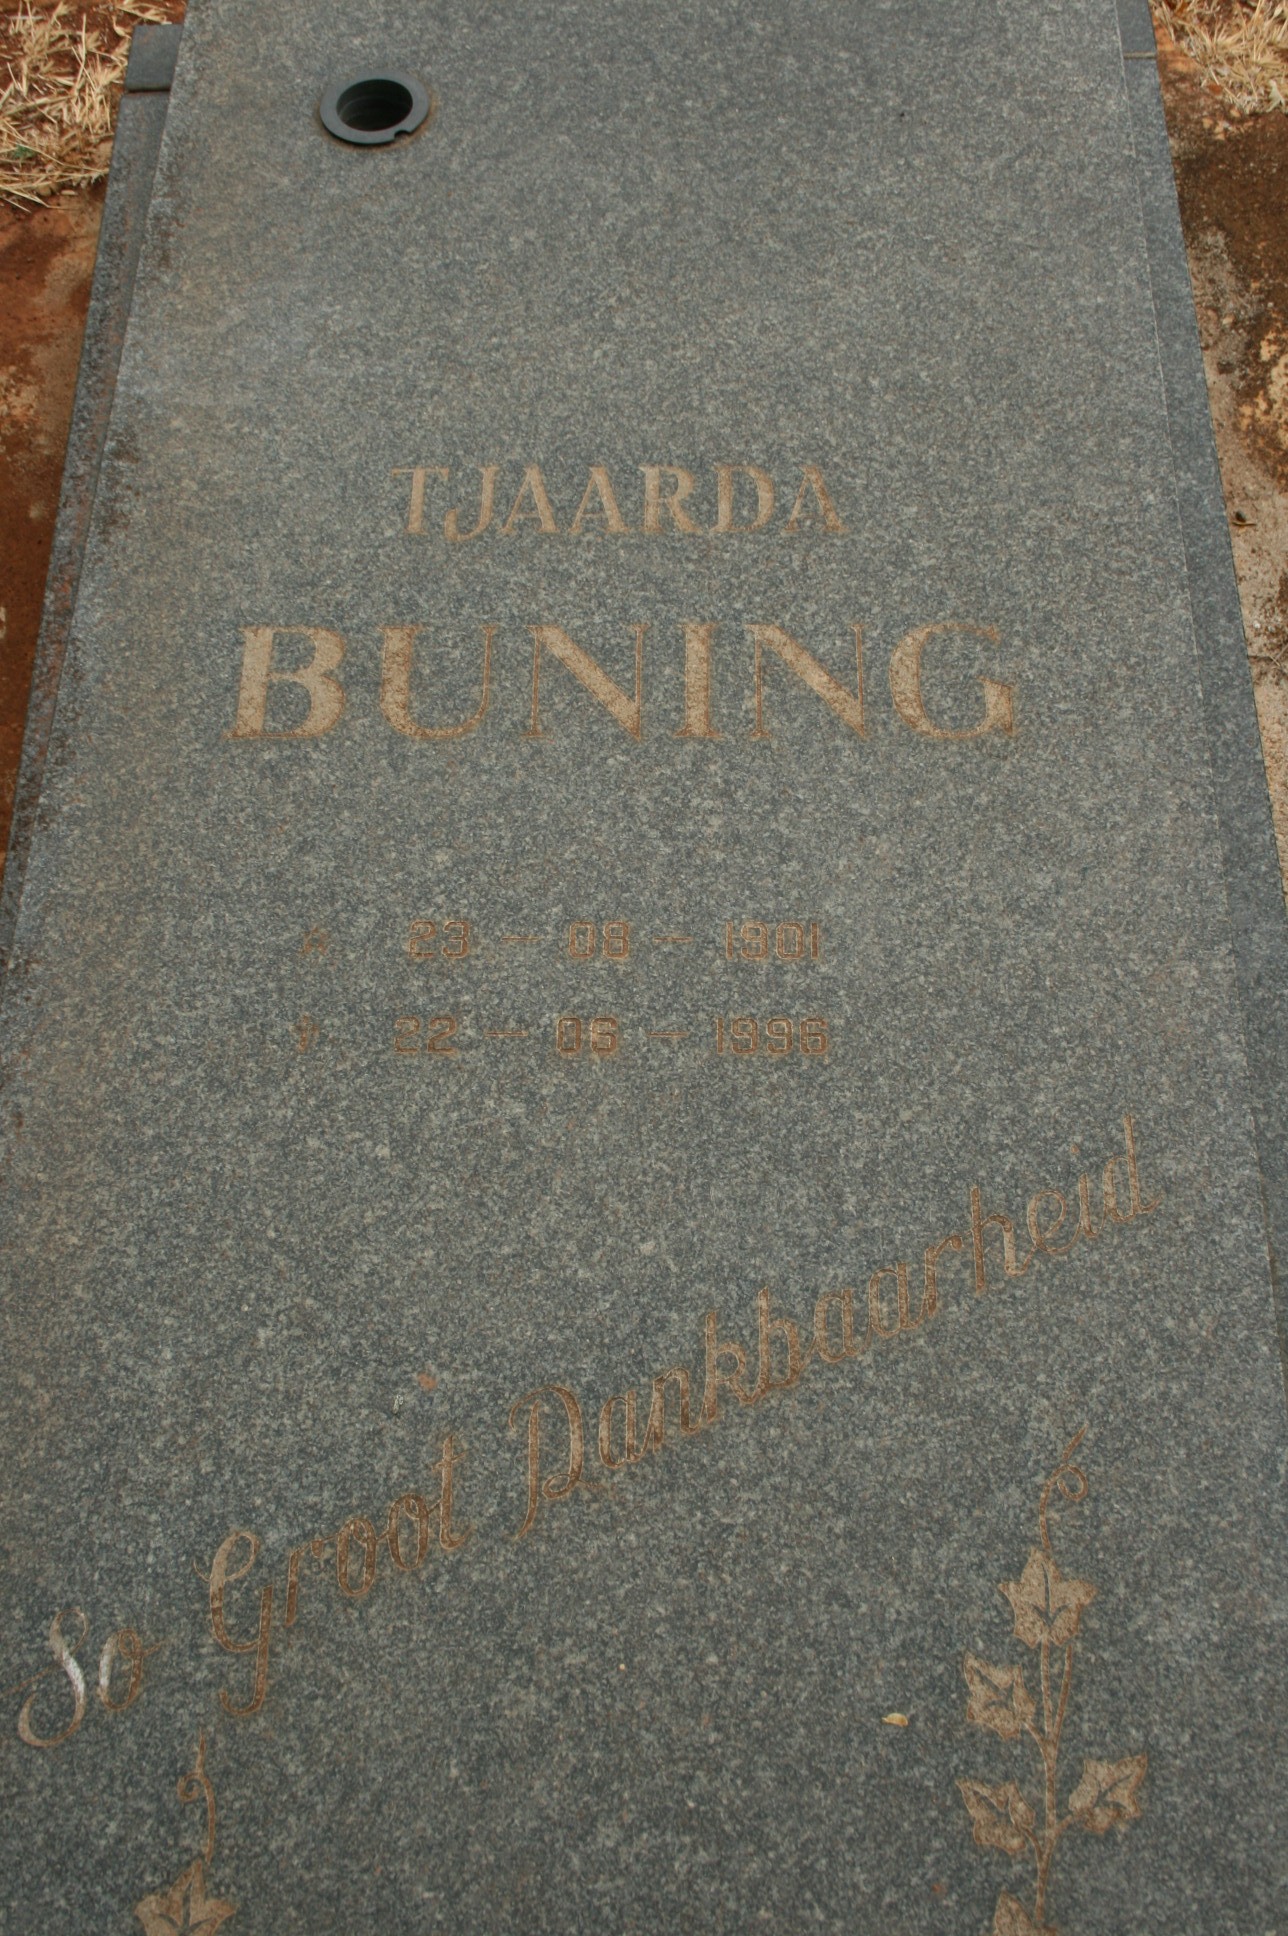 BUNING Tjaarda 1901-1996